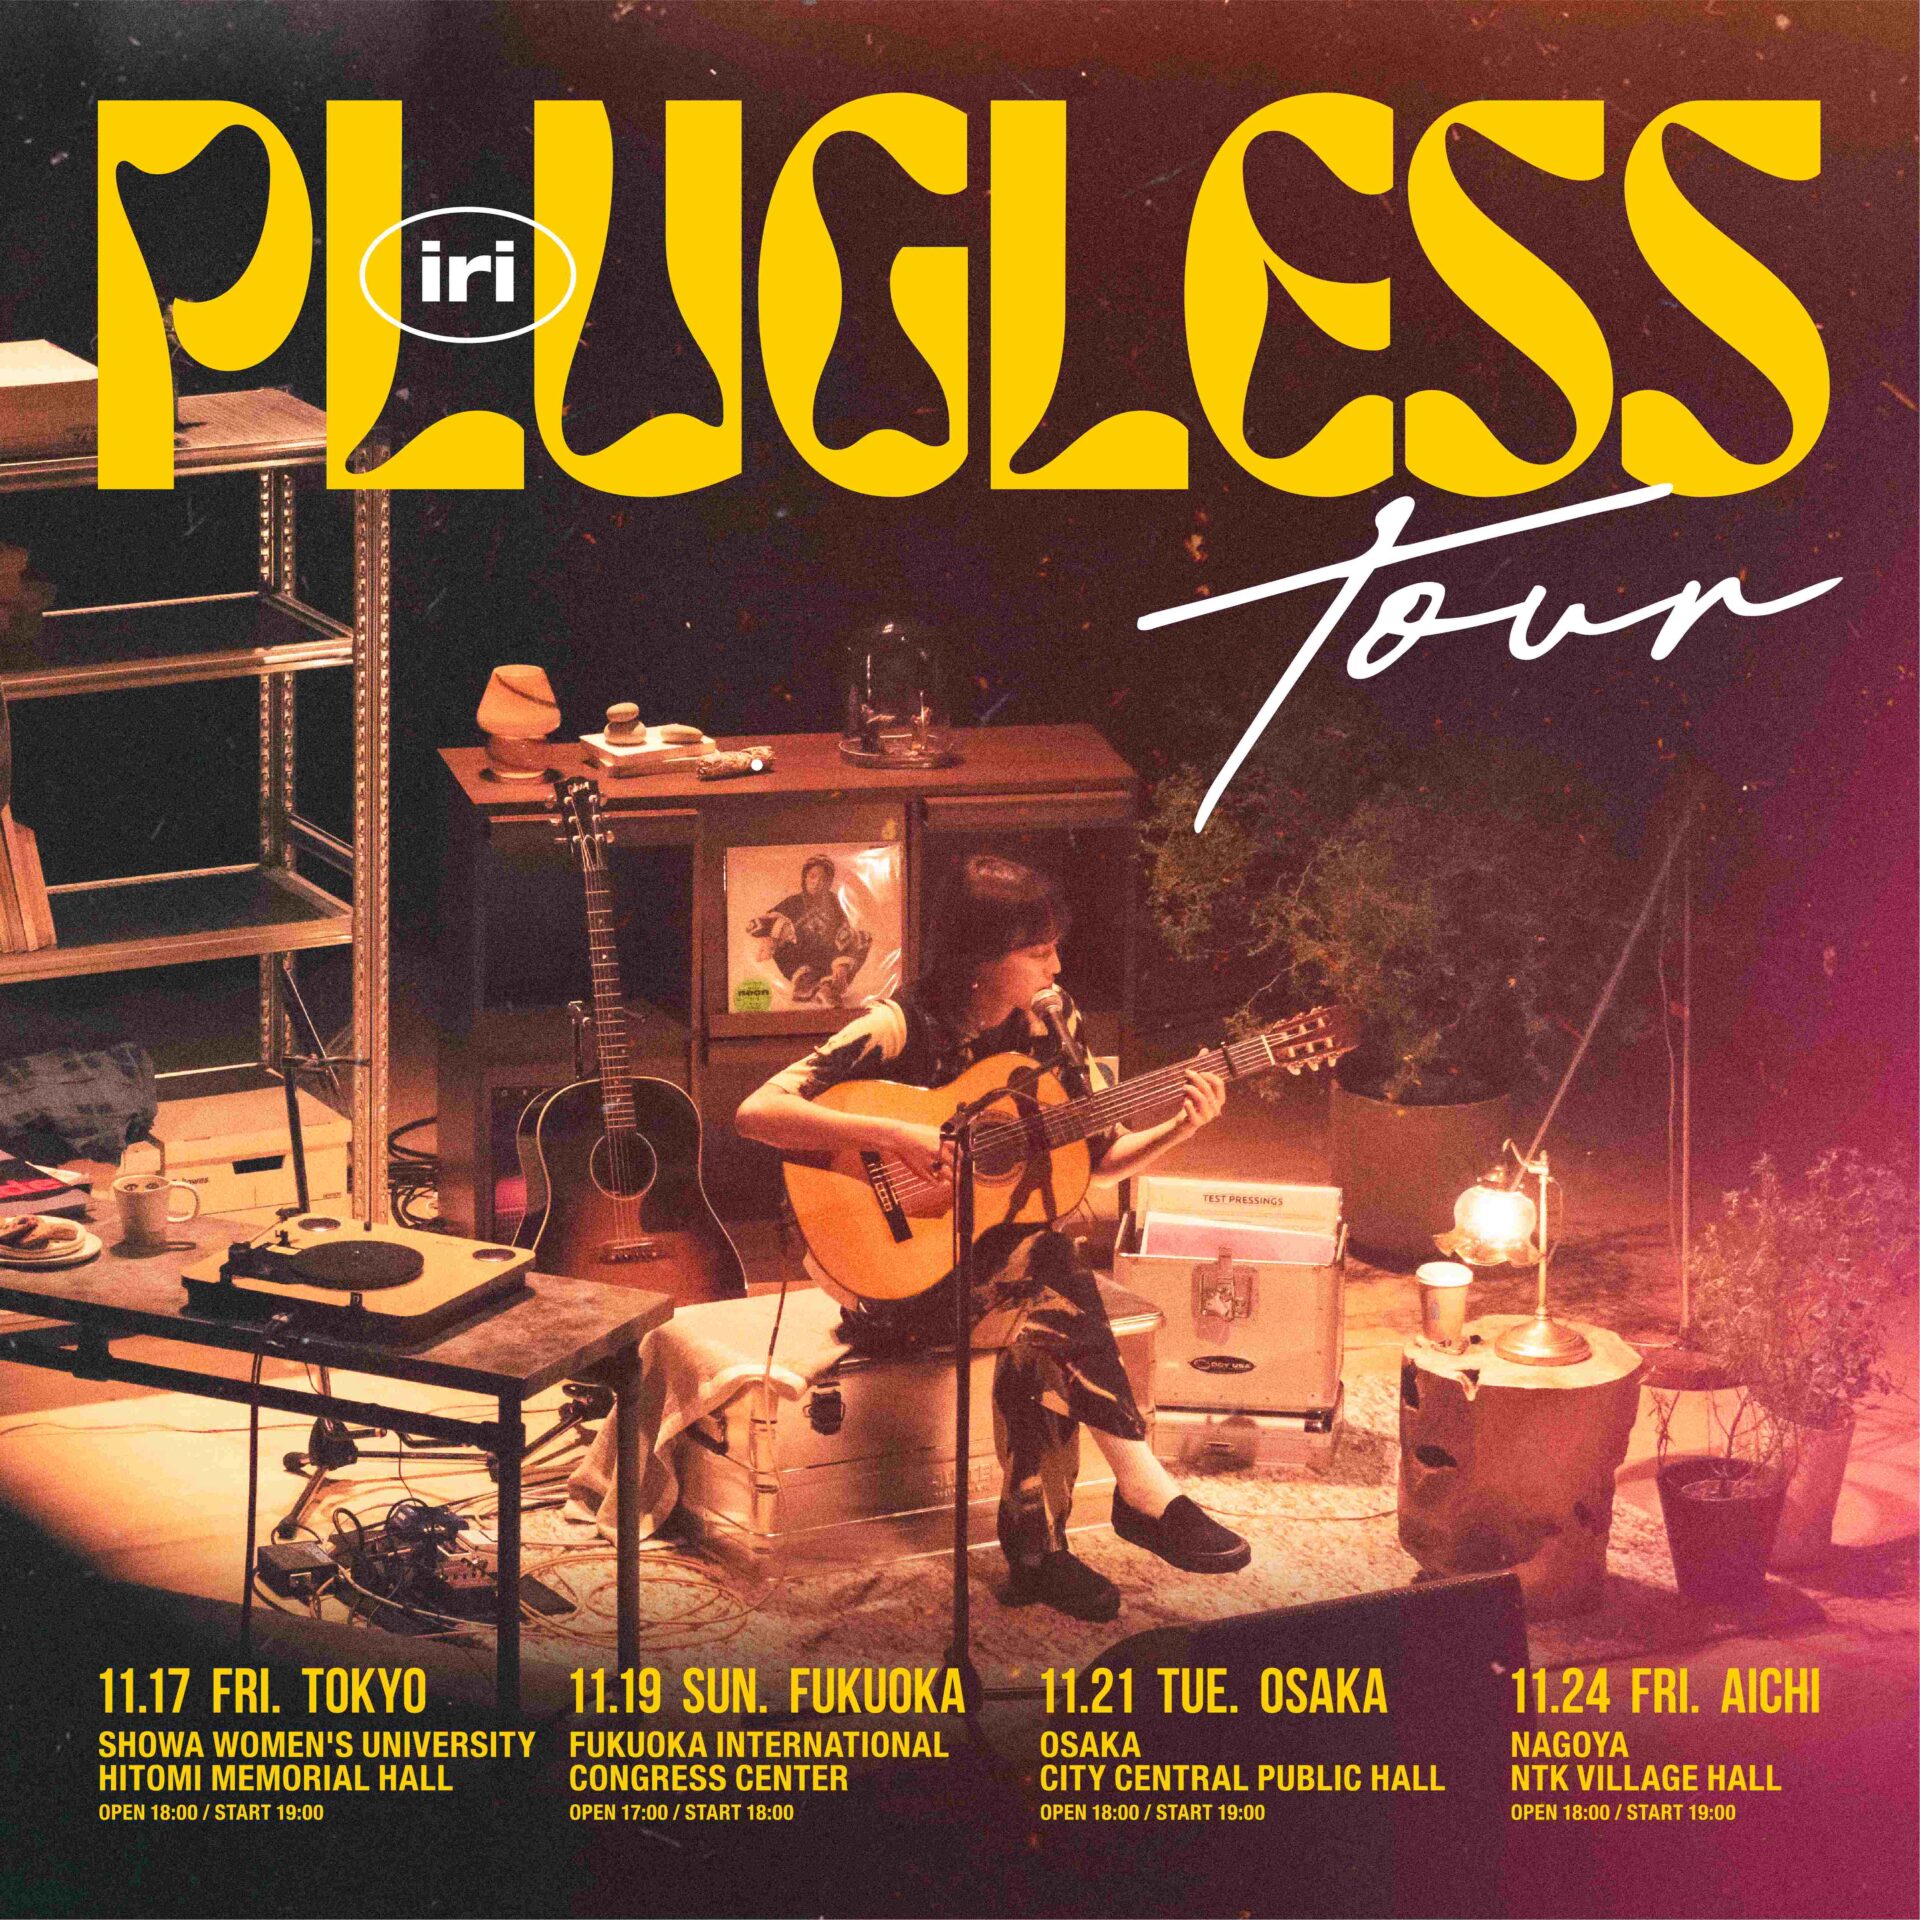 iriツアー「iri Plugless Tour」